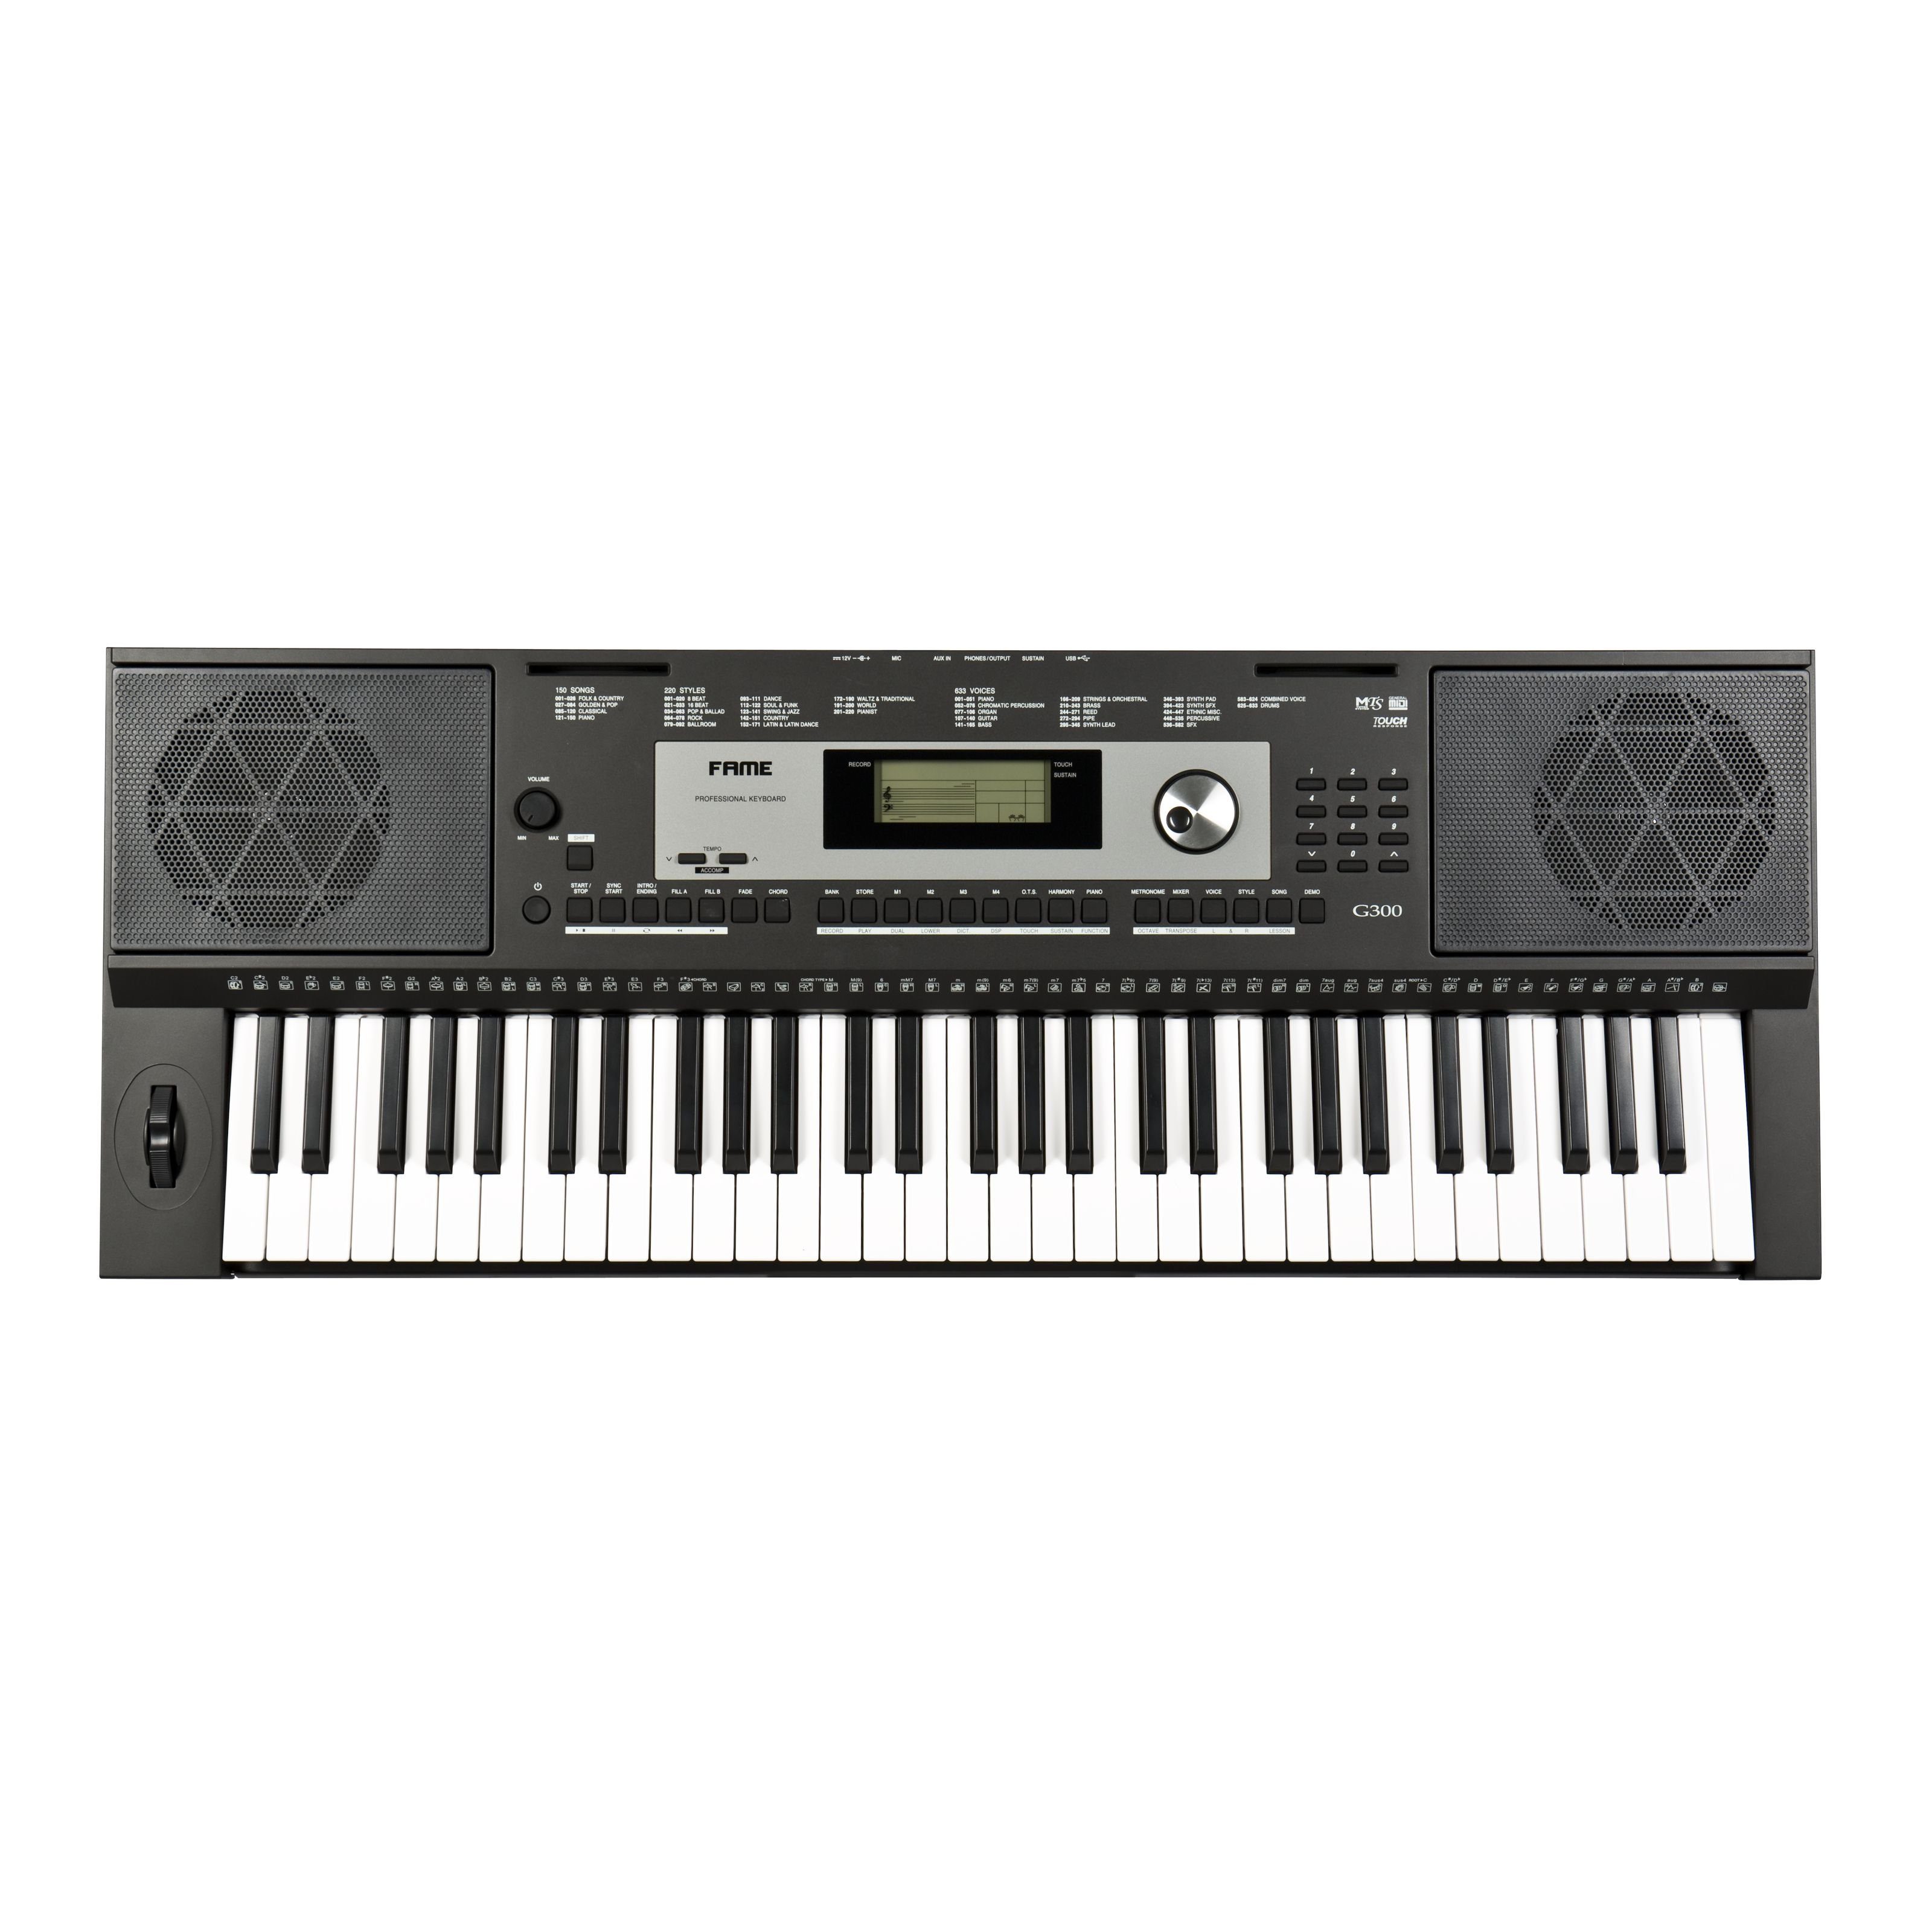 FAME Home-Keyboard (G-300 Keyboard, E-Piano mit 128-facher Polyphonie, 61 Tasten, 220 Styles, 633 Sounds, anschlagdynamischer Klaviatur, 150 Songs, Lautsprechern und Hammermechanik, Schwarz, Keyboards, Home Keyboards), G-300 Keyboard, E-Piano, anschlagdynamische Klaviatur